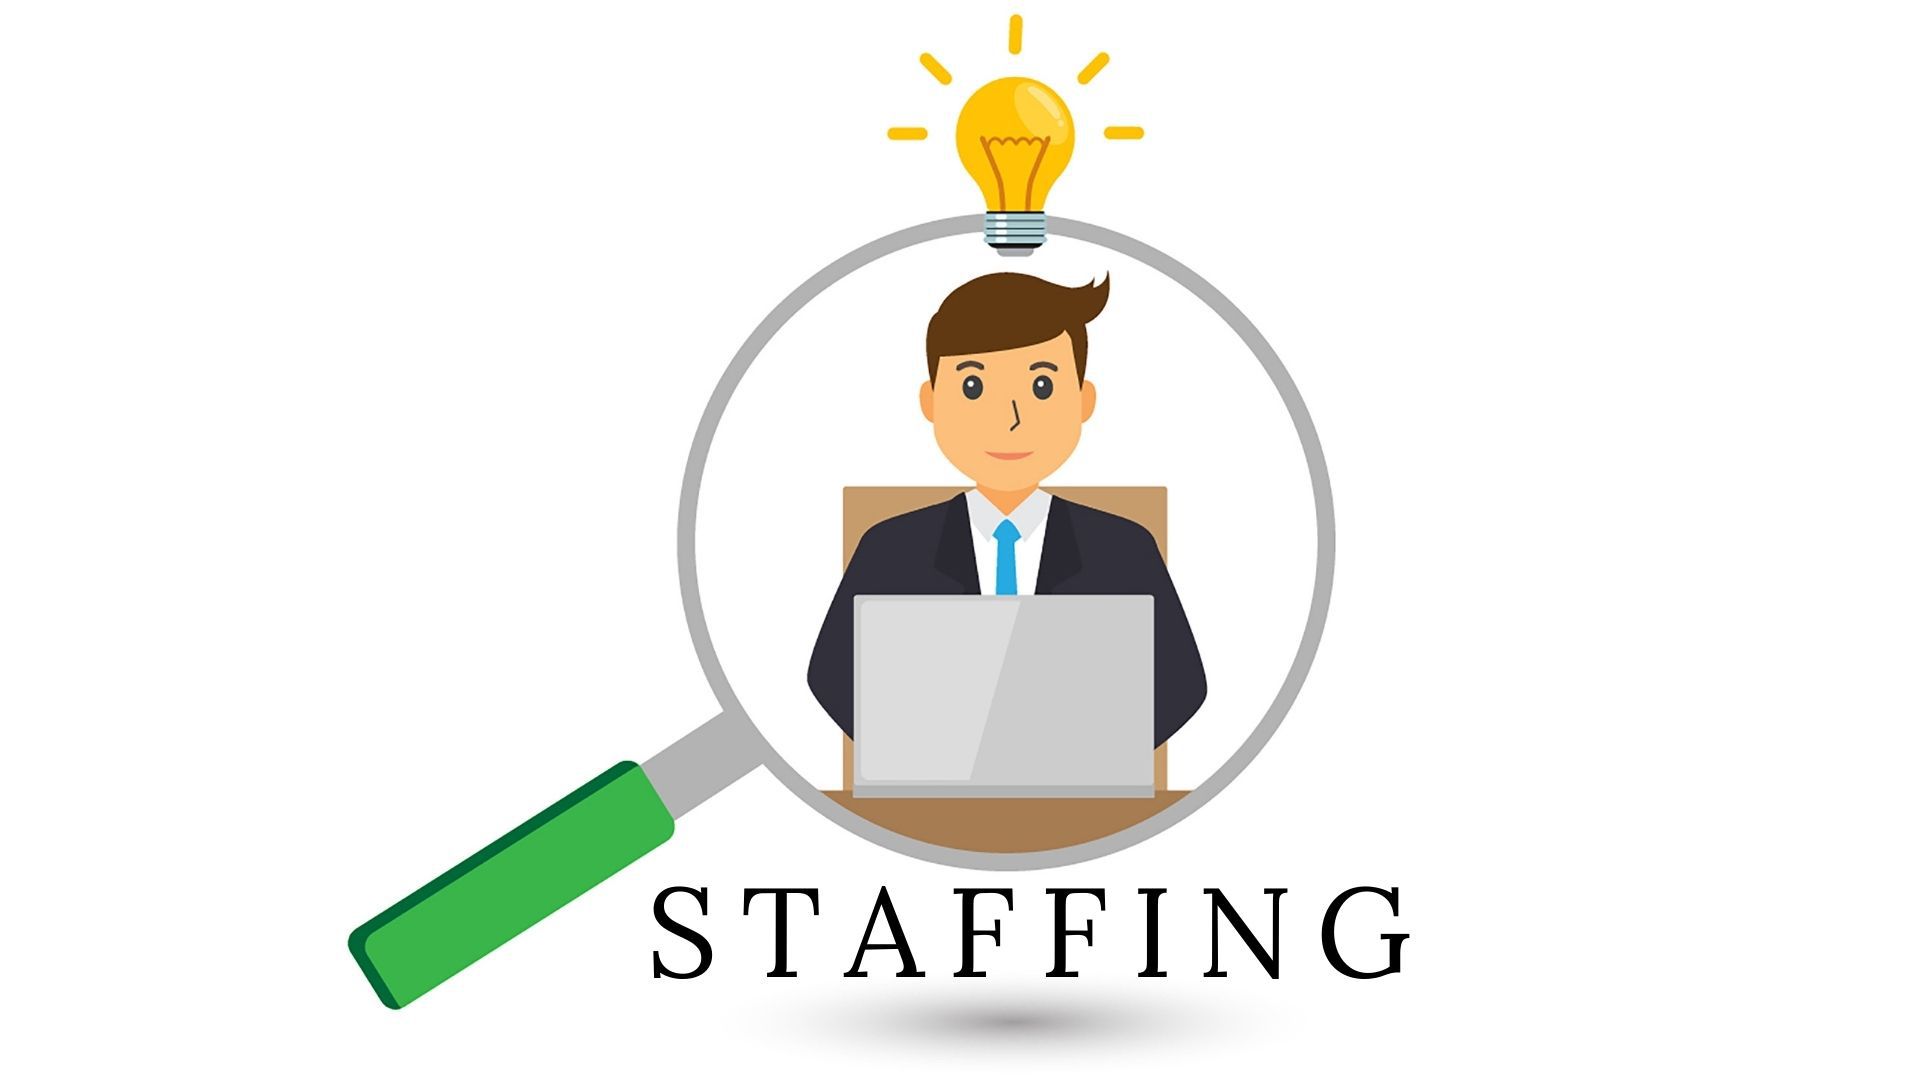 Dịch vụ Staffing đang trở thành xu hướng trên thị trường